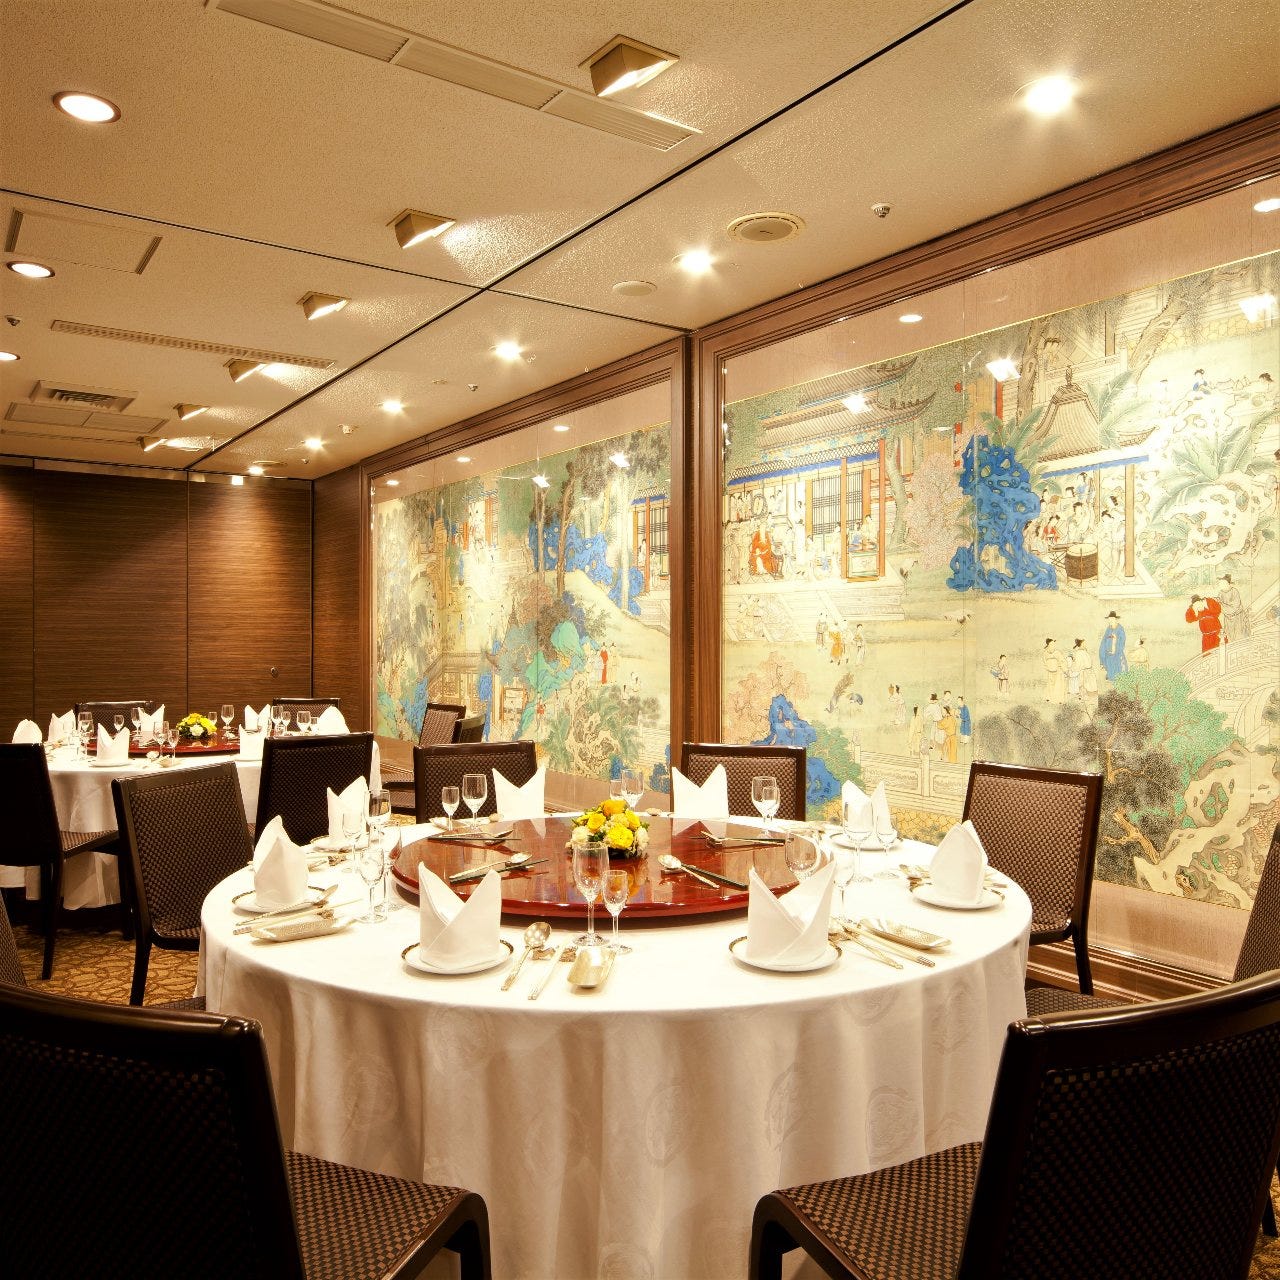 日本东京银座的牛排餐厅-设计案例--餐厅酒吧--大橡_泛家居供应链第一网